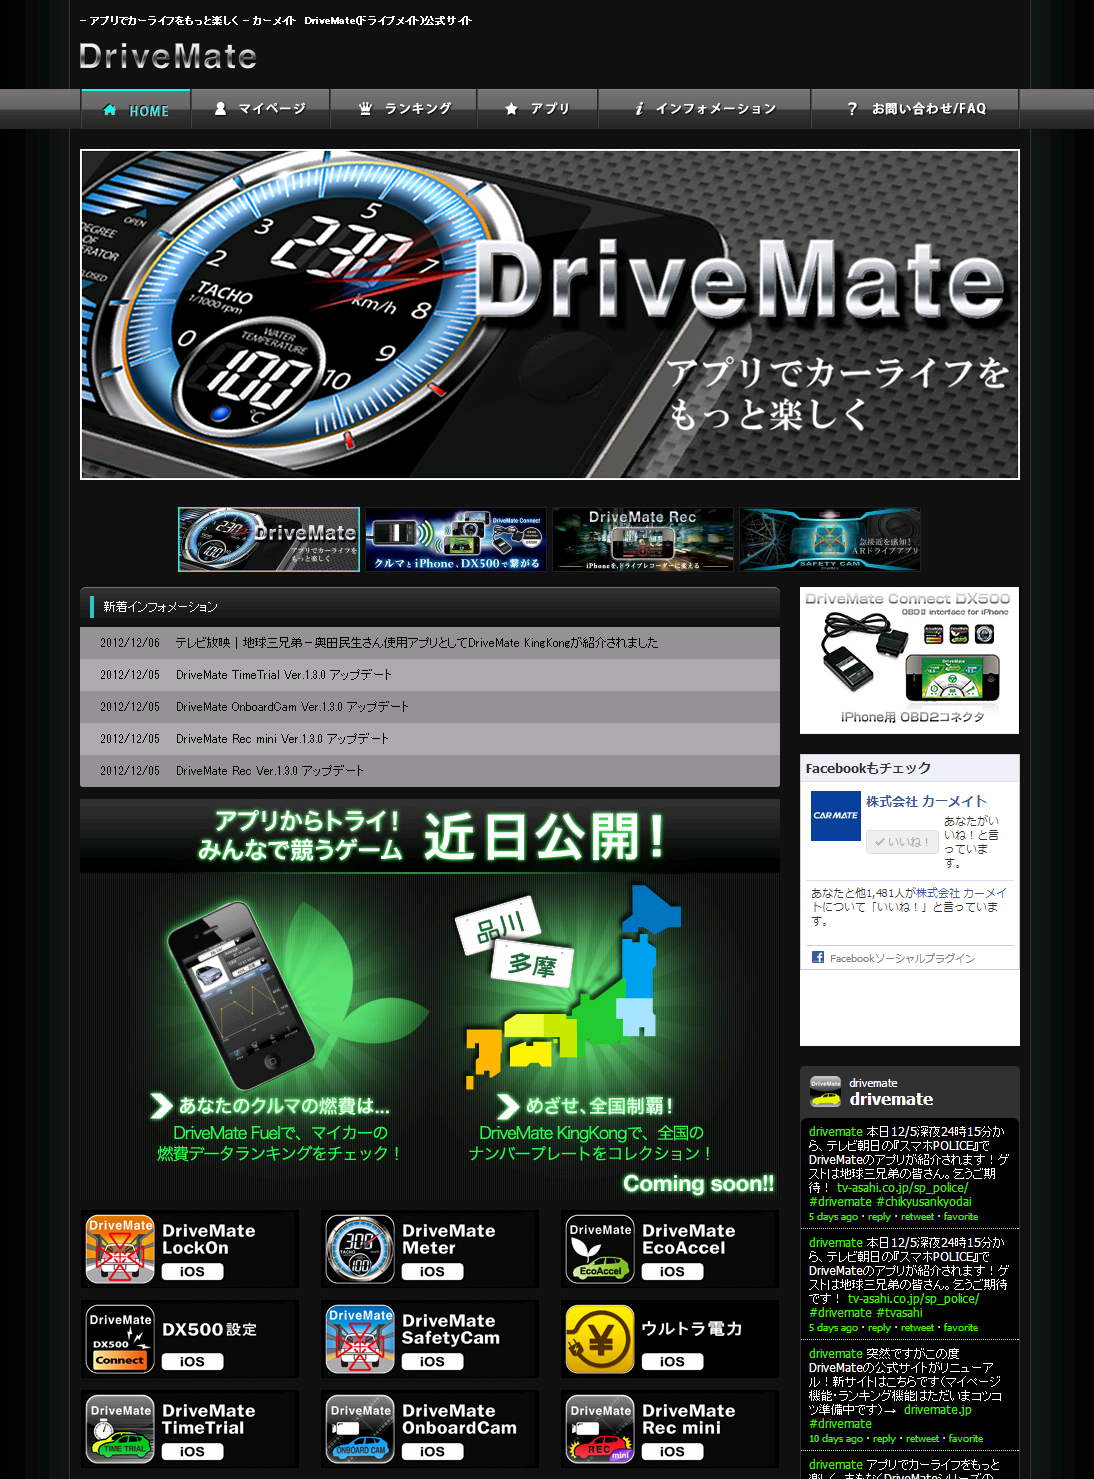 愛車を使って公道で他車と競い合うことができる! しかも総額100万円のプレゼントも用意される「drivemate.jp」オープン - drivemate_jp